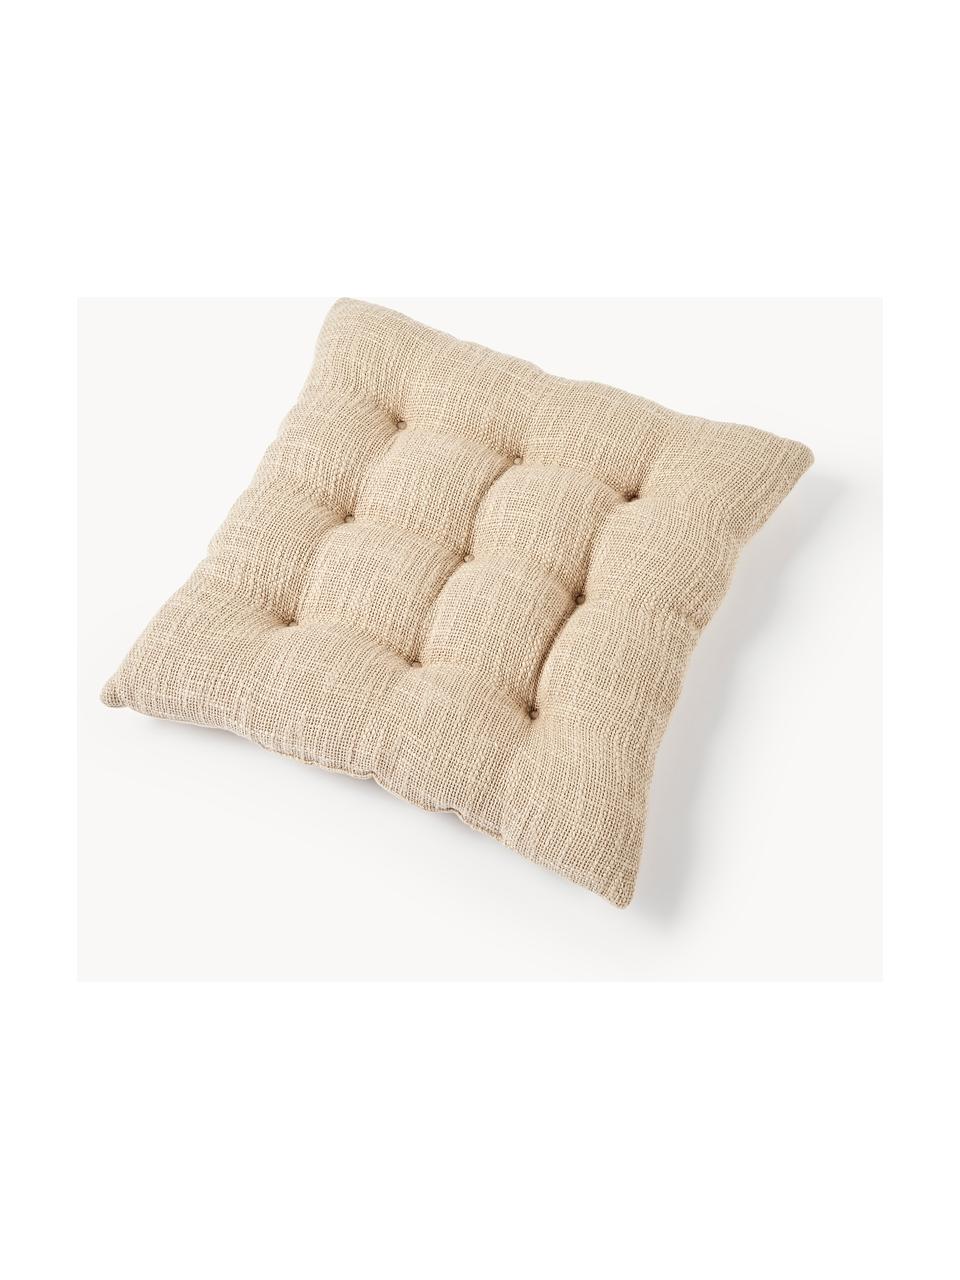 Baumwoll-Sitzkissen Sasha, Bezug: 100% Baumwolle, Beige, B 40 x L 40 cm